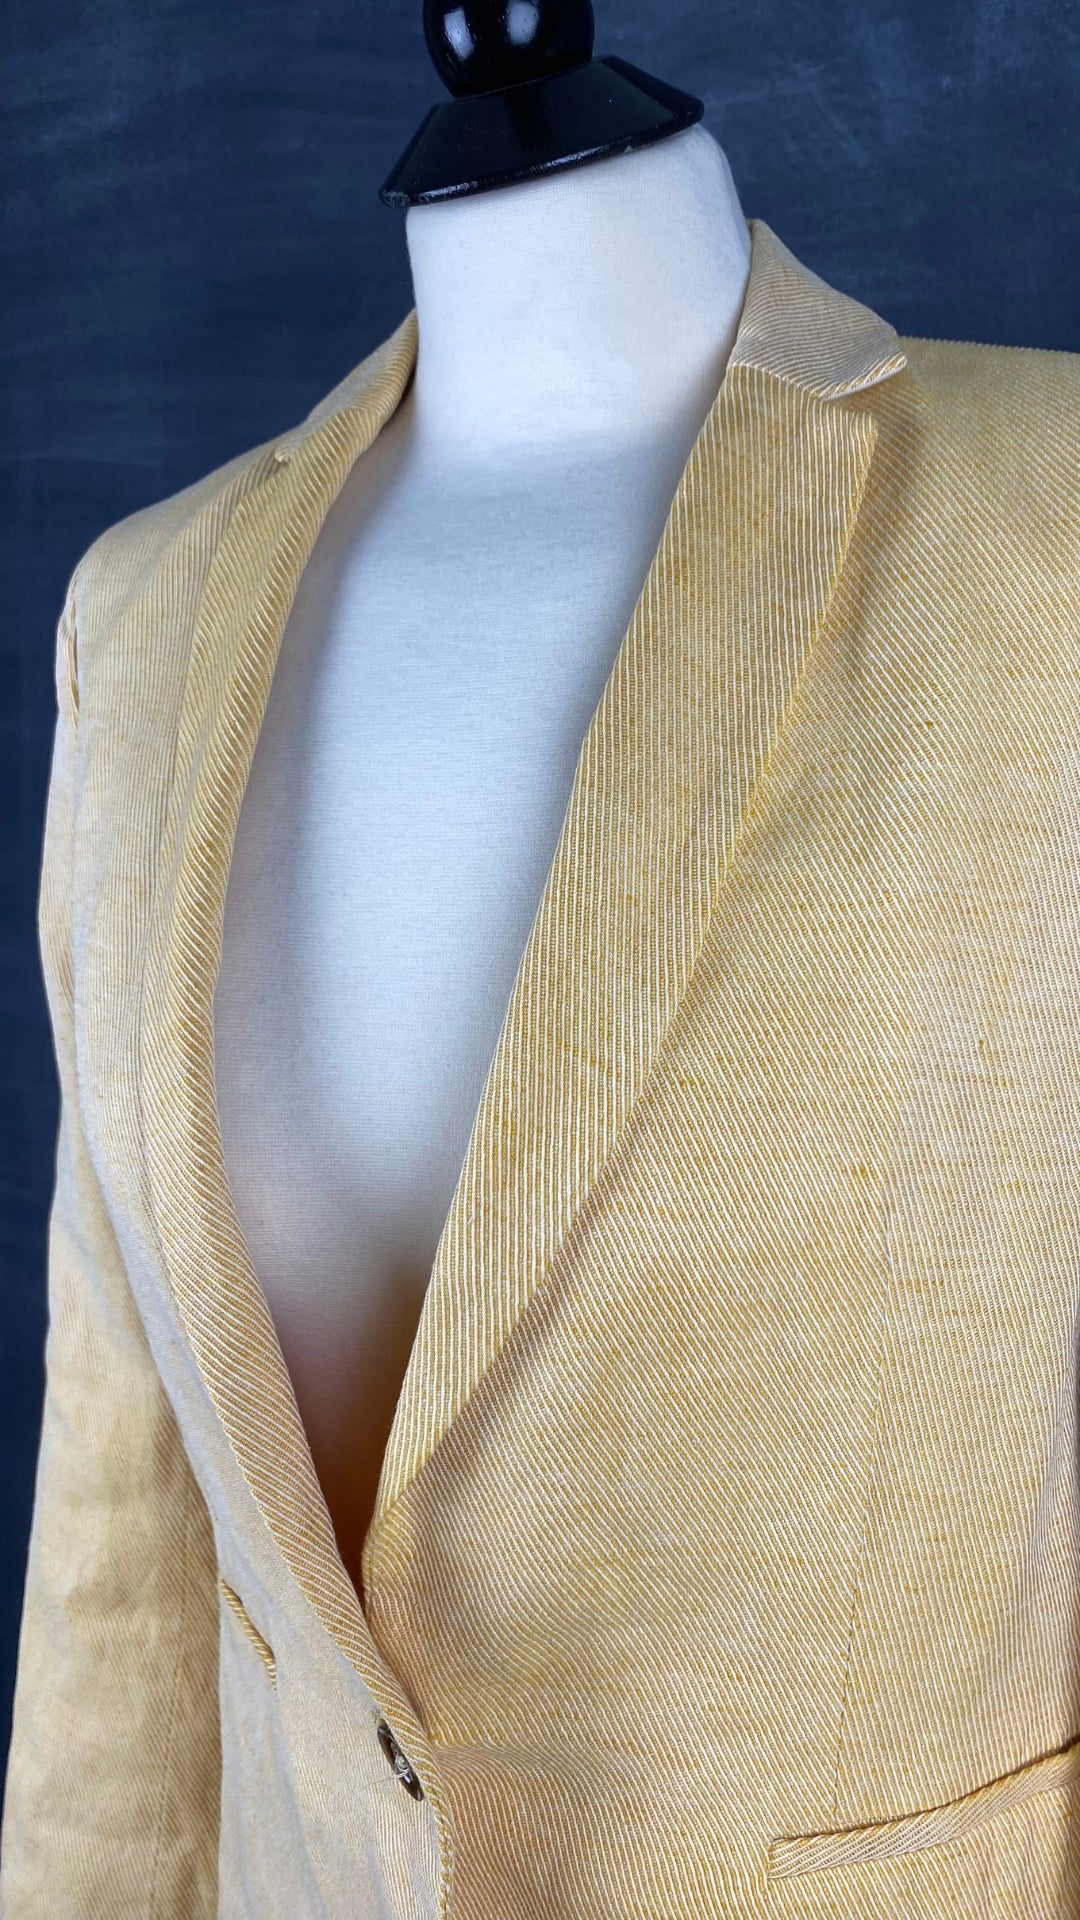 Blazer jaune doux mélange de lin Massimo Dutti, taille 8/s. Vue de l'encolure.